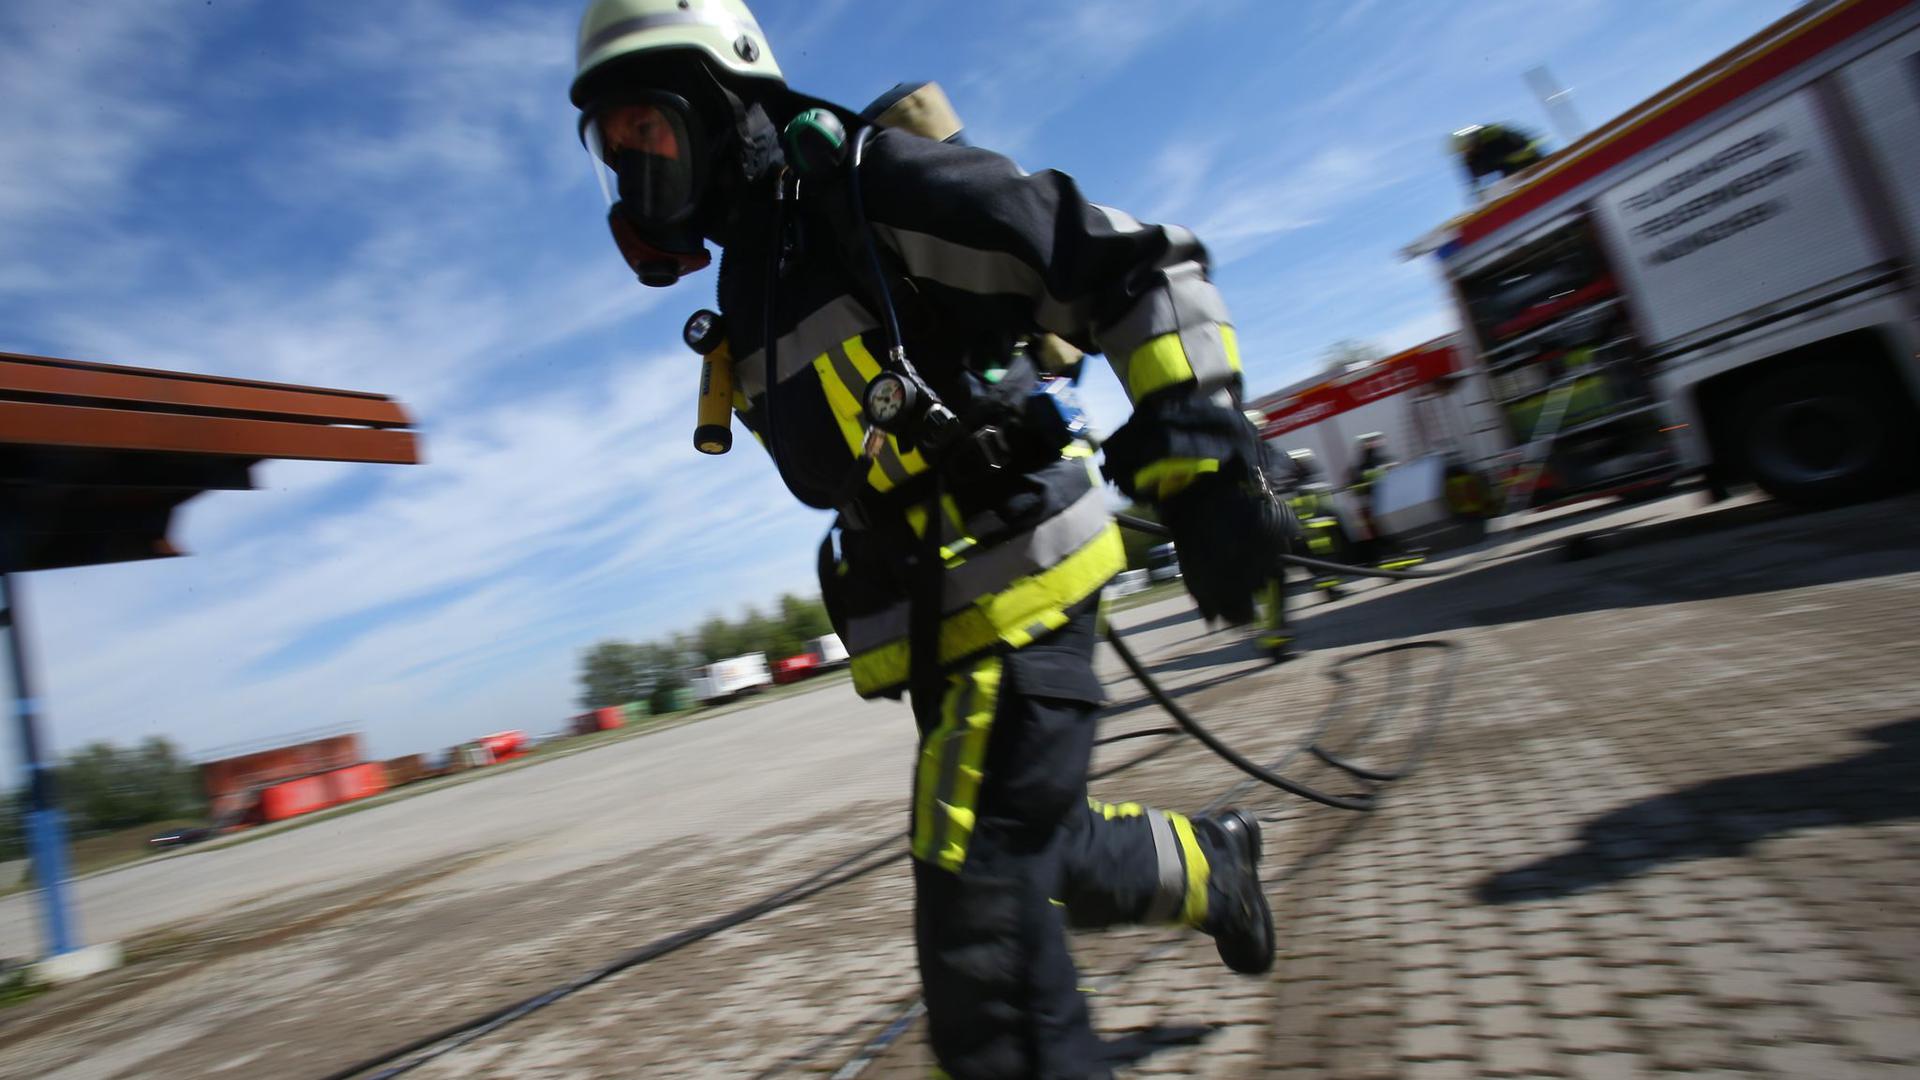 Ein Feuerwehrmann in Atemschutz während einer Einsatz-Übung am Flughafen München.